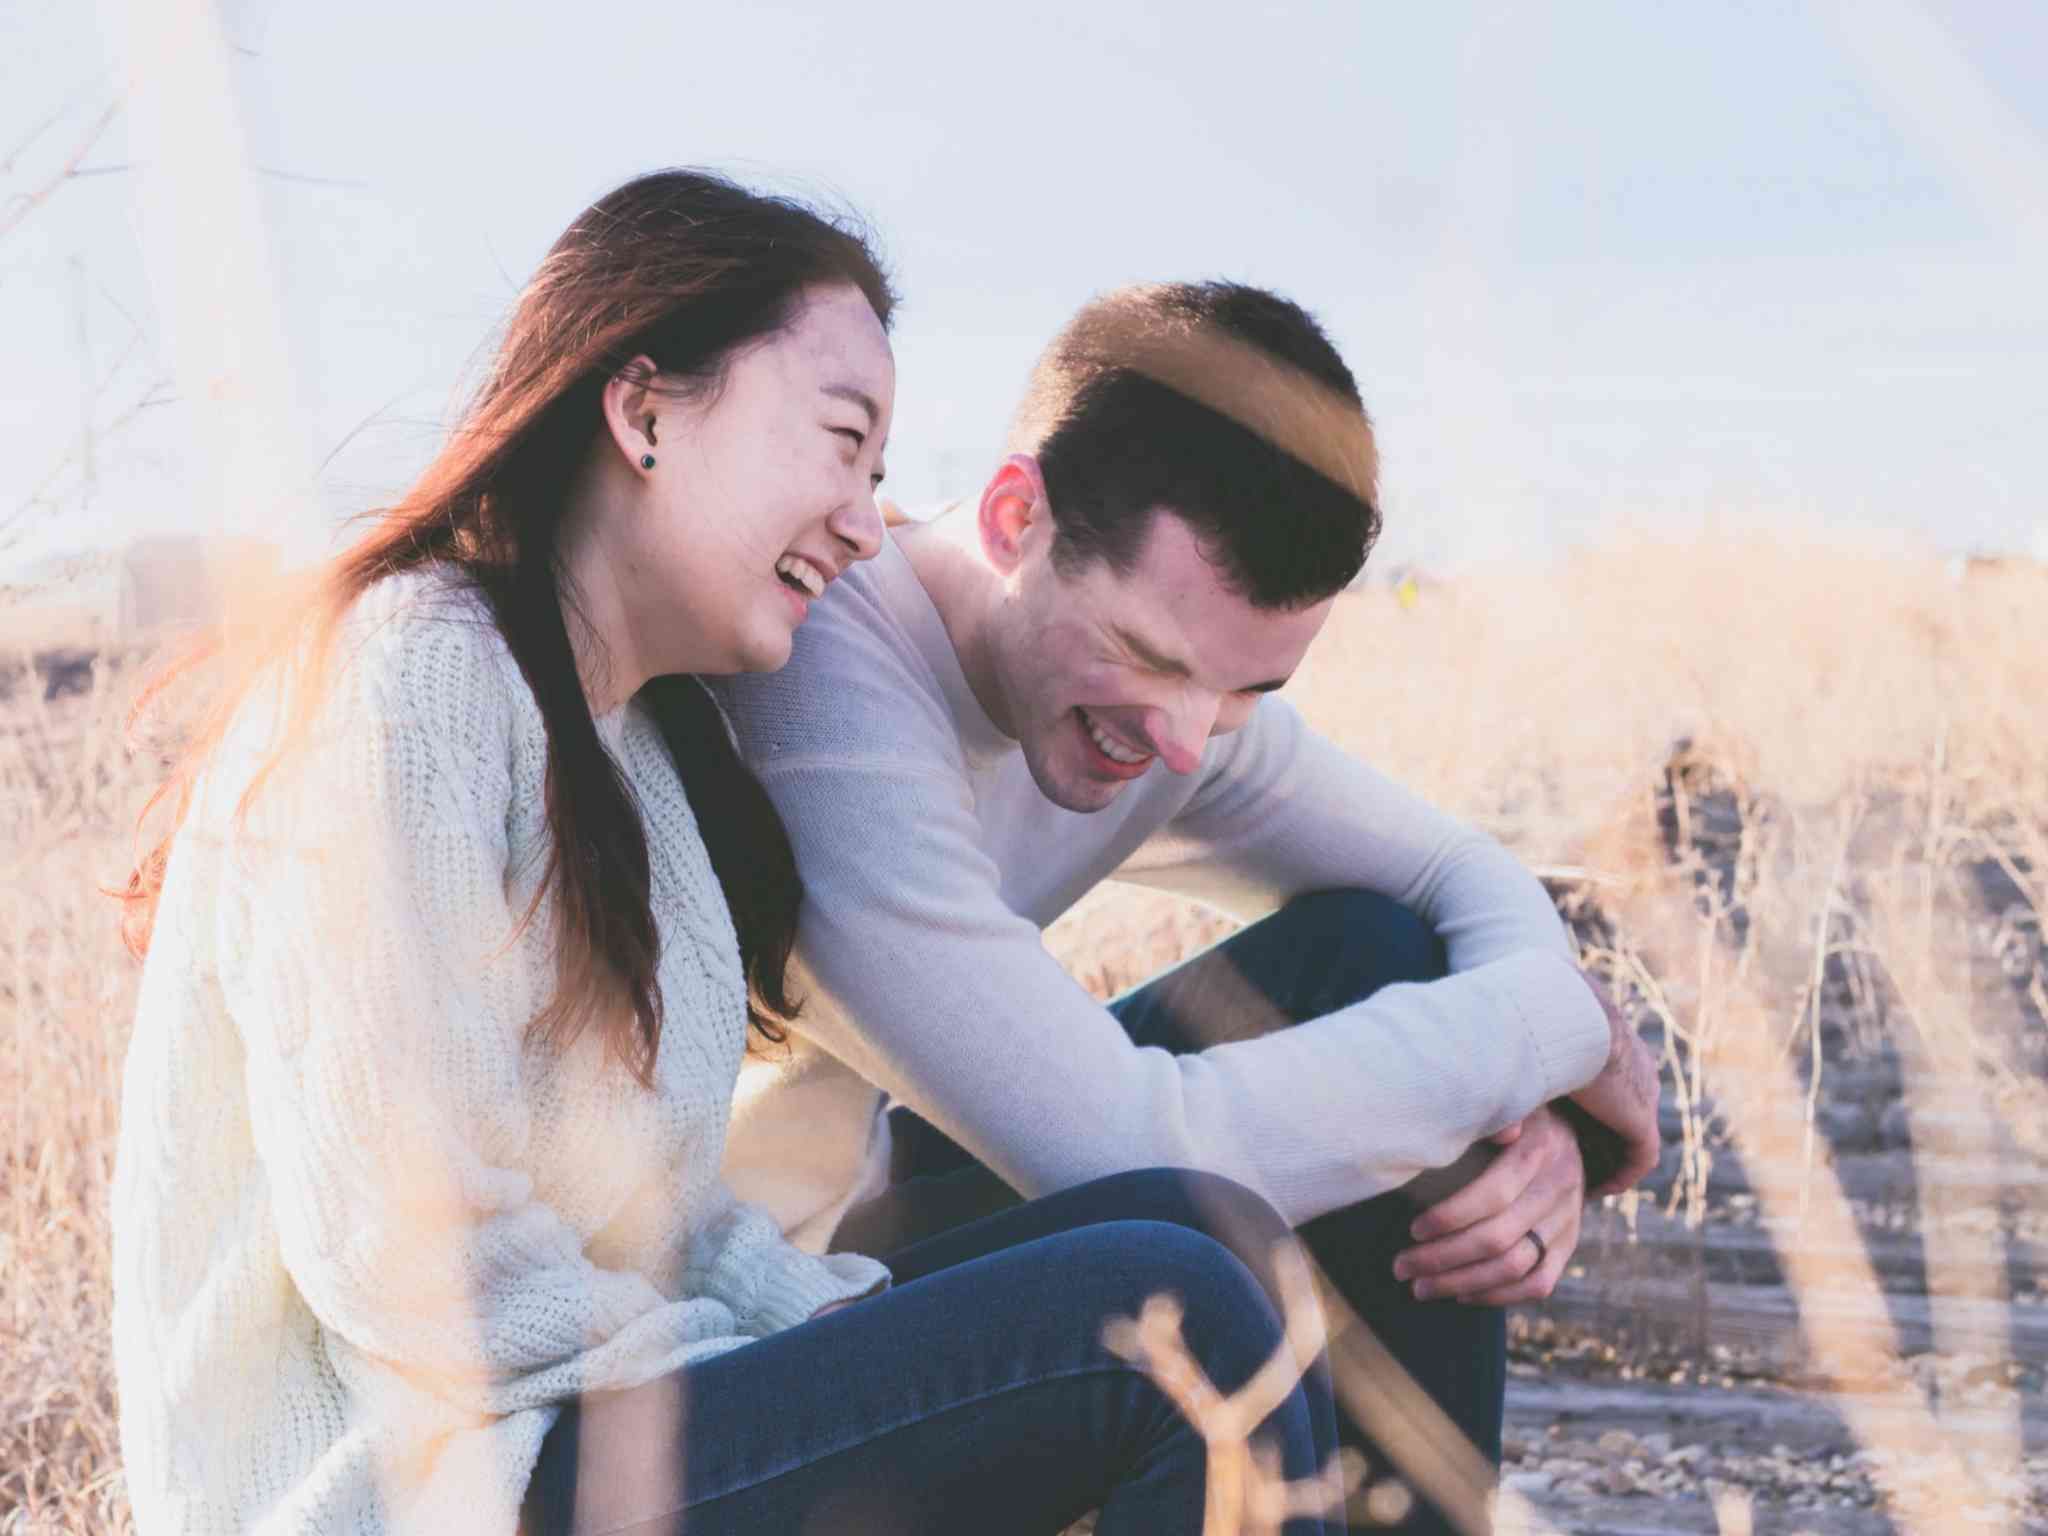 Benarkah Melakukan Hubungan Intim Sebelum Menikah Di Jepang Itu Wajar? Simak Jawabannya Disini!